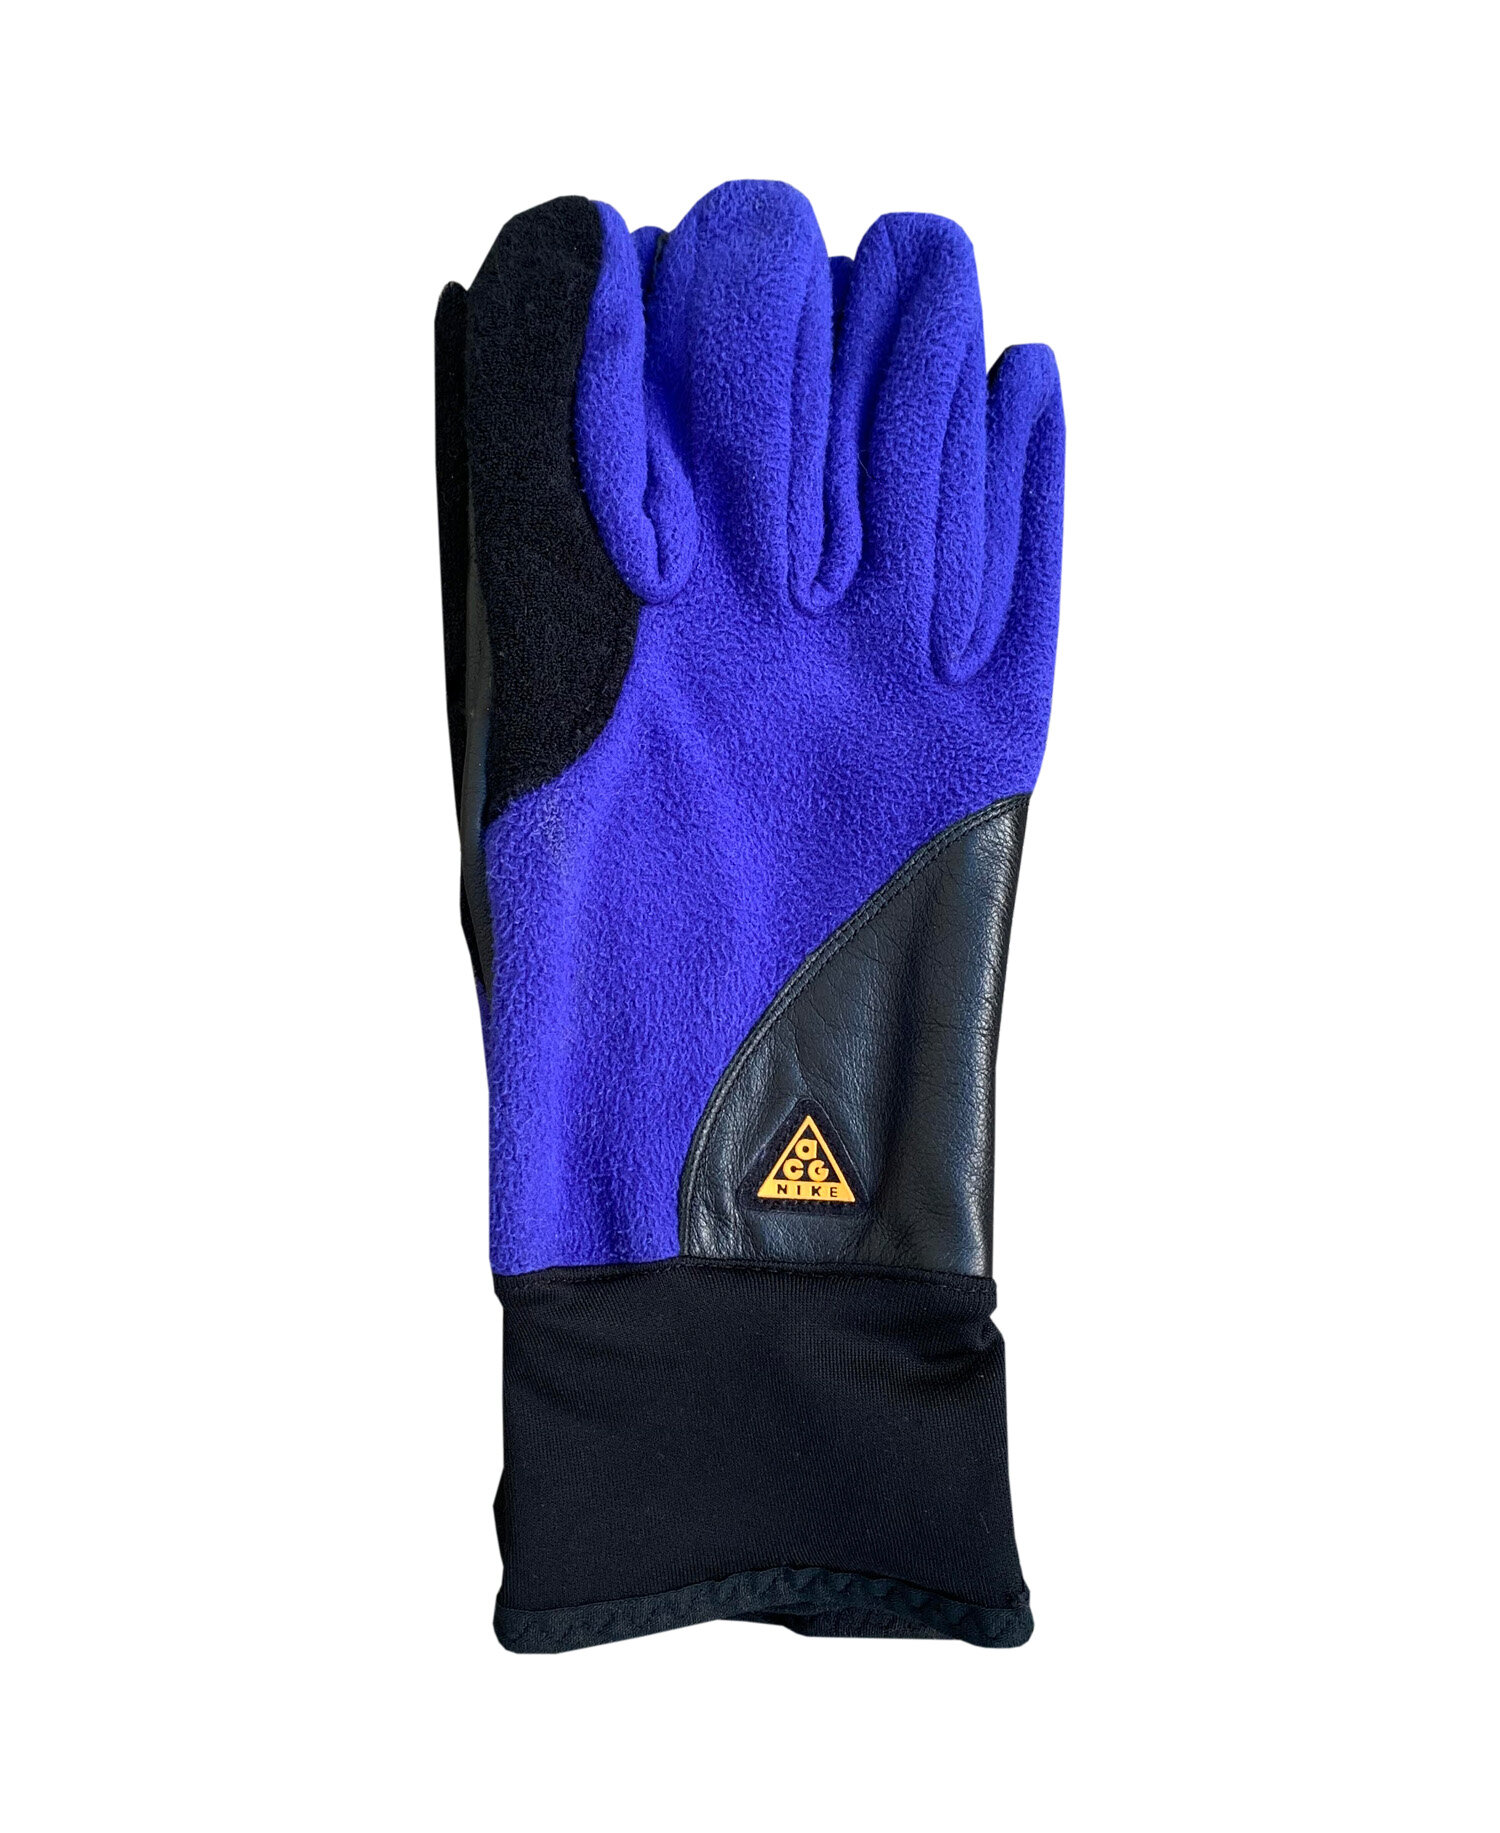 acg gloves